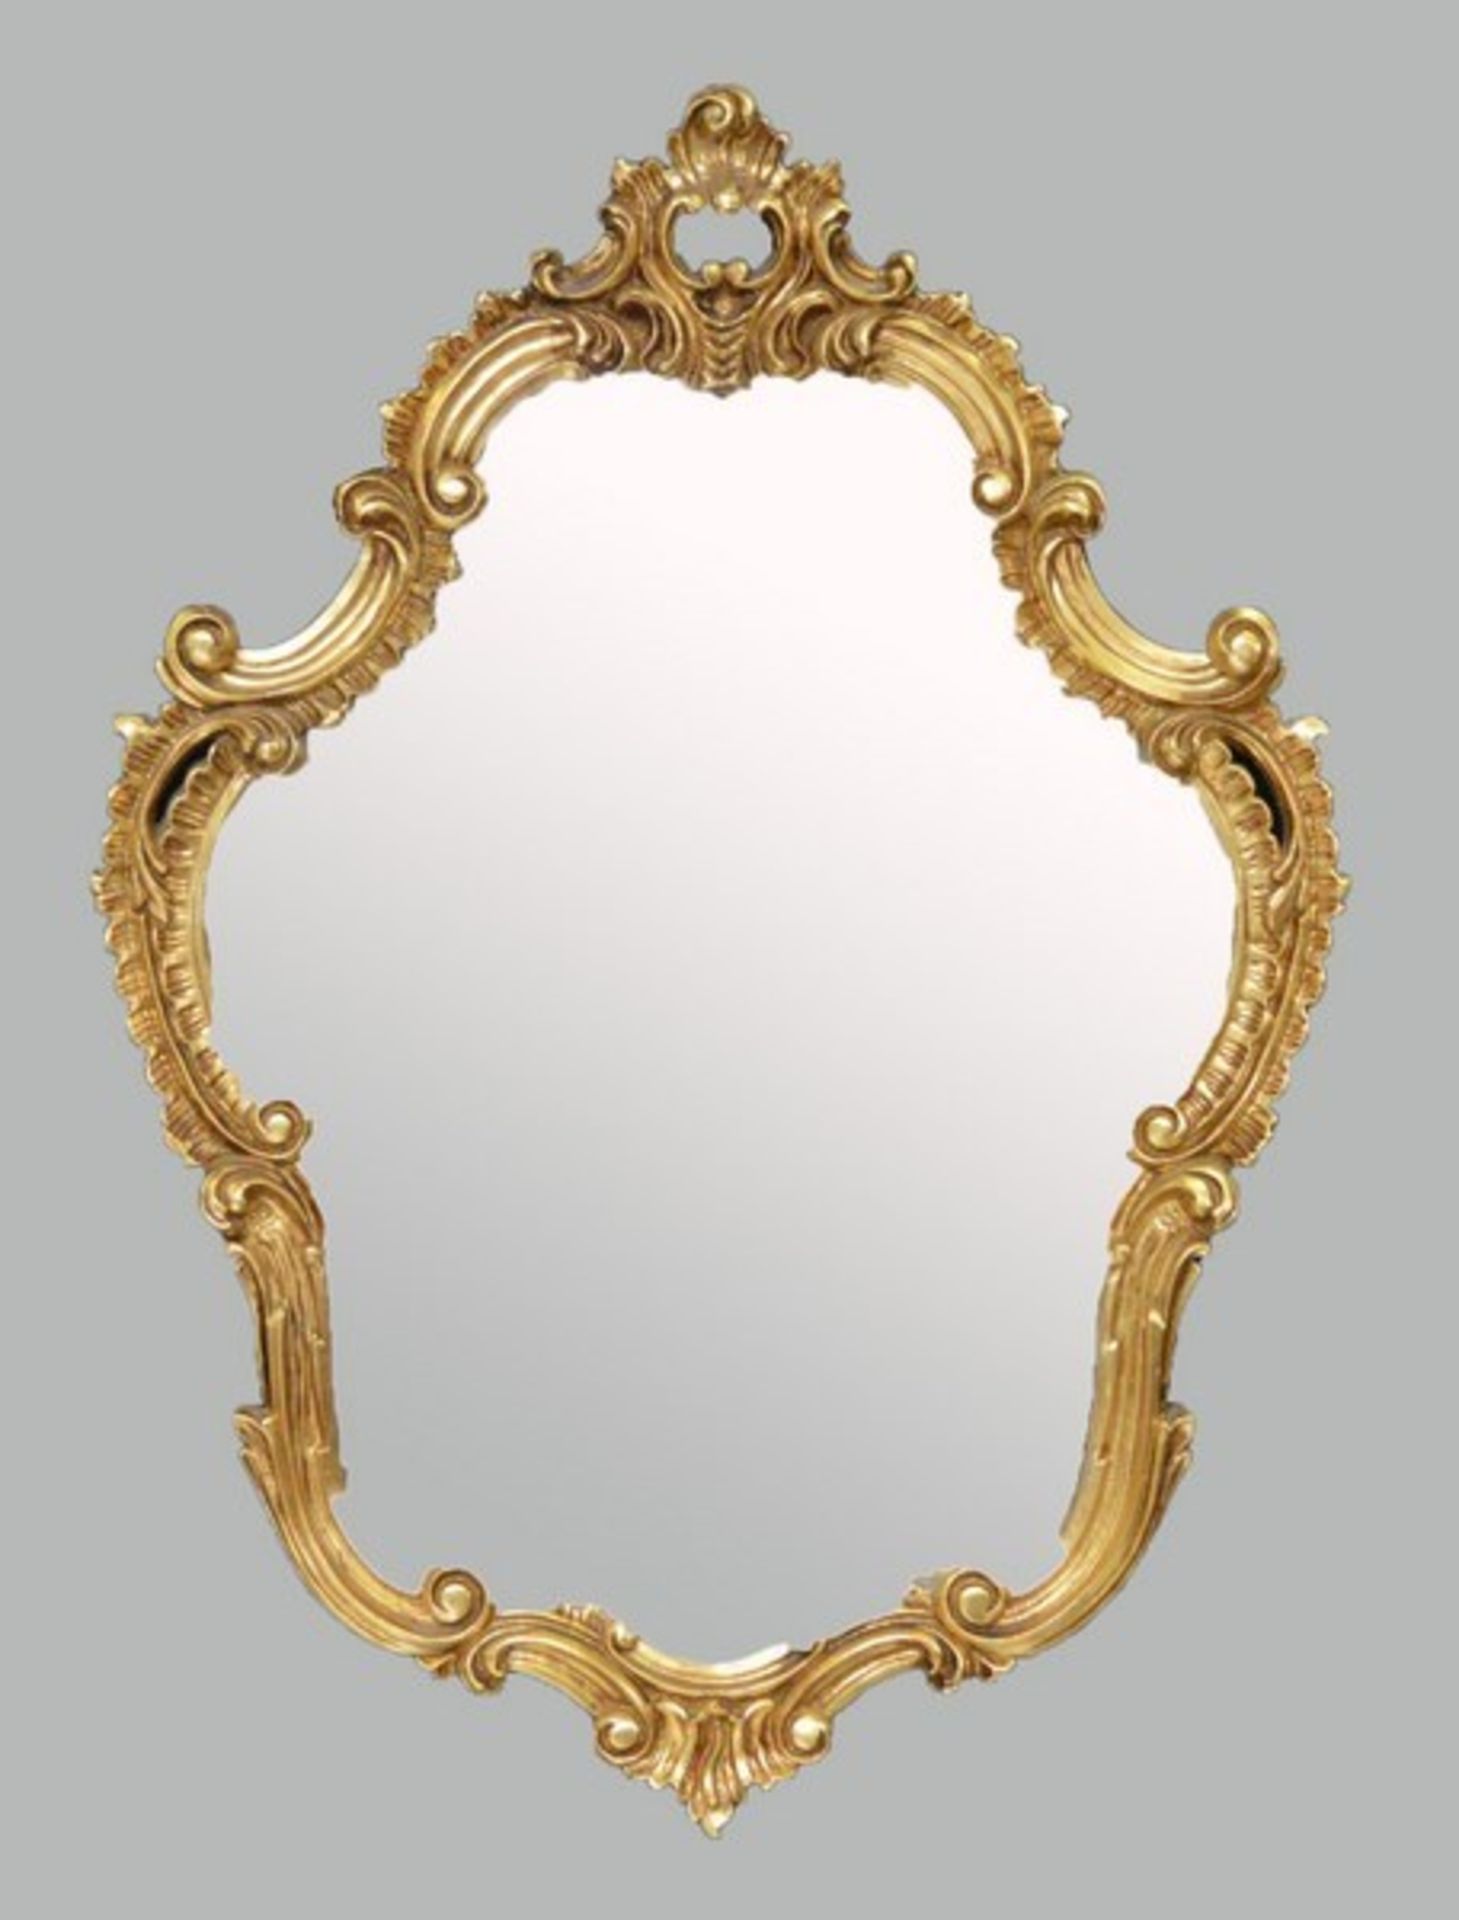 Spiegel Hartholz, gold gefasst, im Barock-Stil, mit Ornamenten verziert, 62 X 88 cm